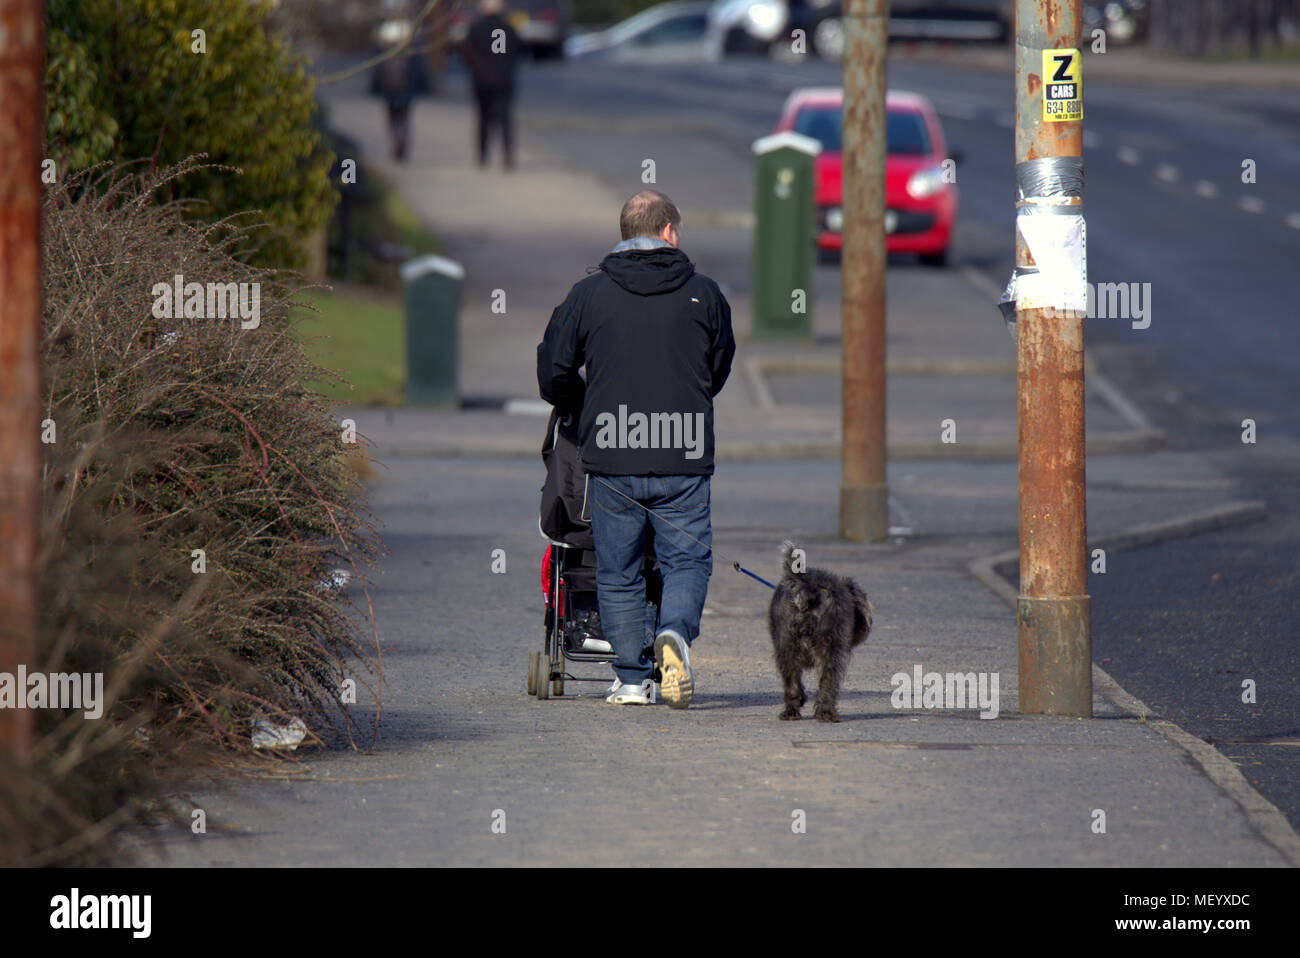 La population locale l'homme poussant la pram sur chaussée trottoir rue walking dog Castlemilk, Glasgow, Royaume-Uni Banque D'Images